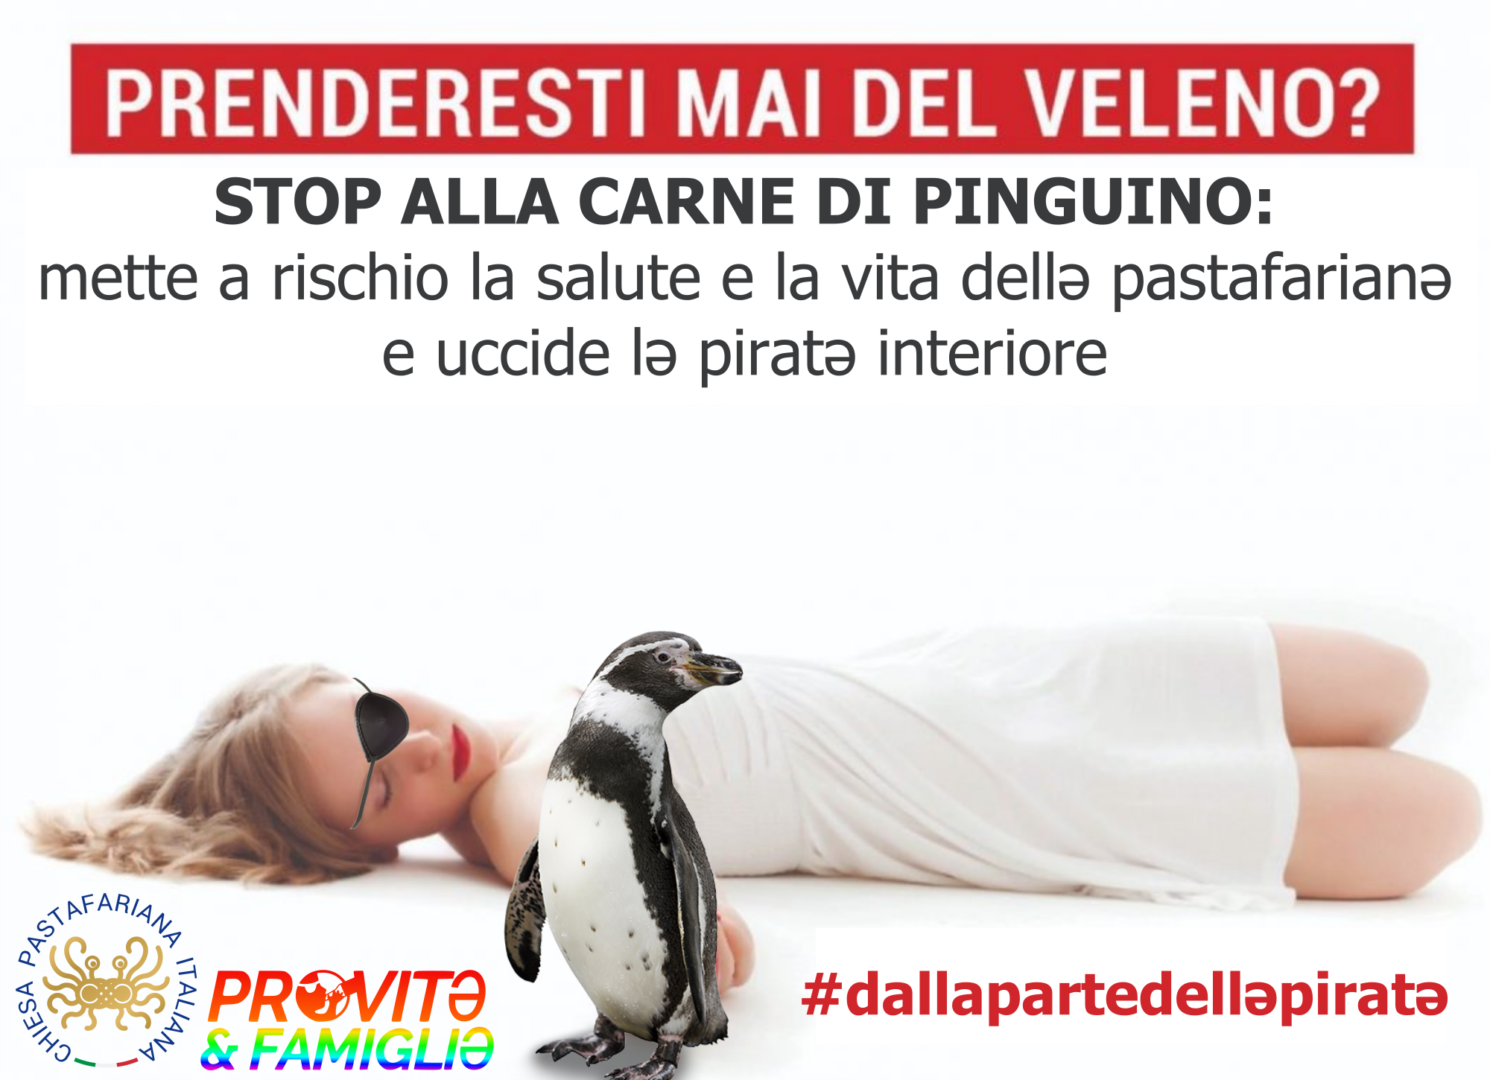 Stop alla carne di pinguino (e alla propaganda antiscientifica)